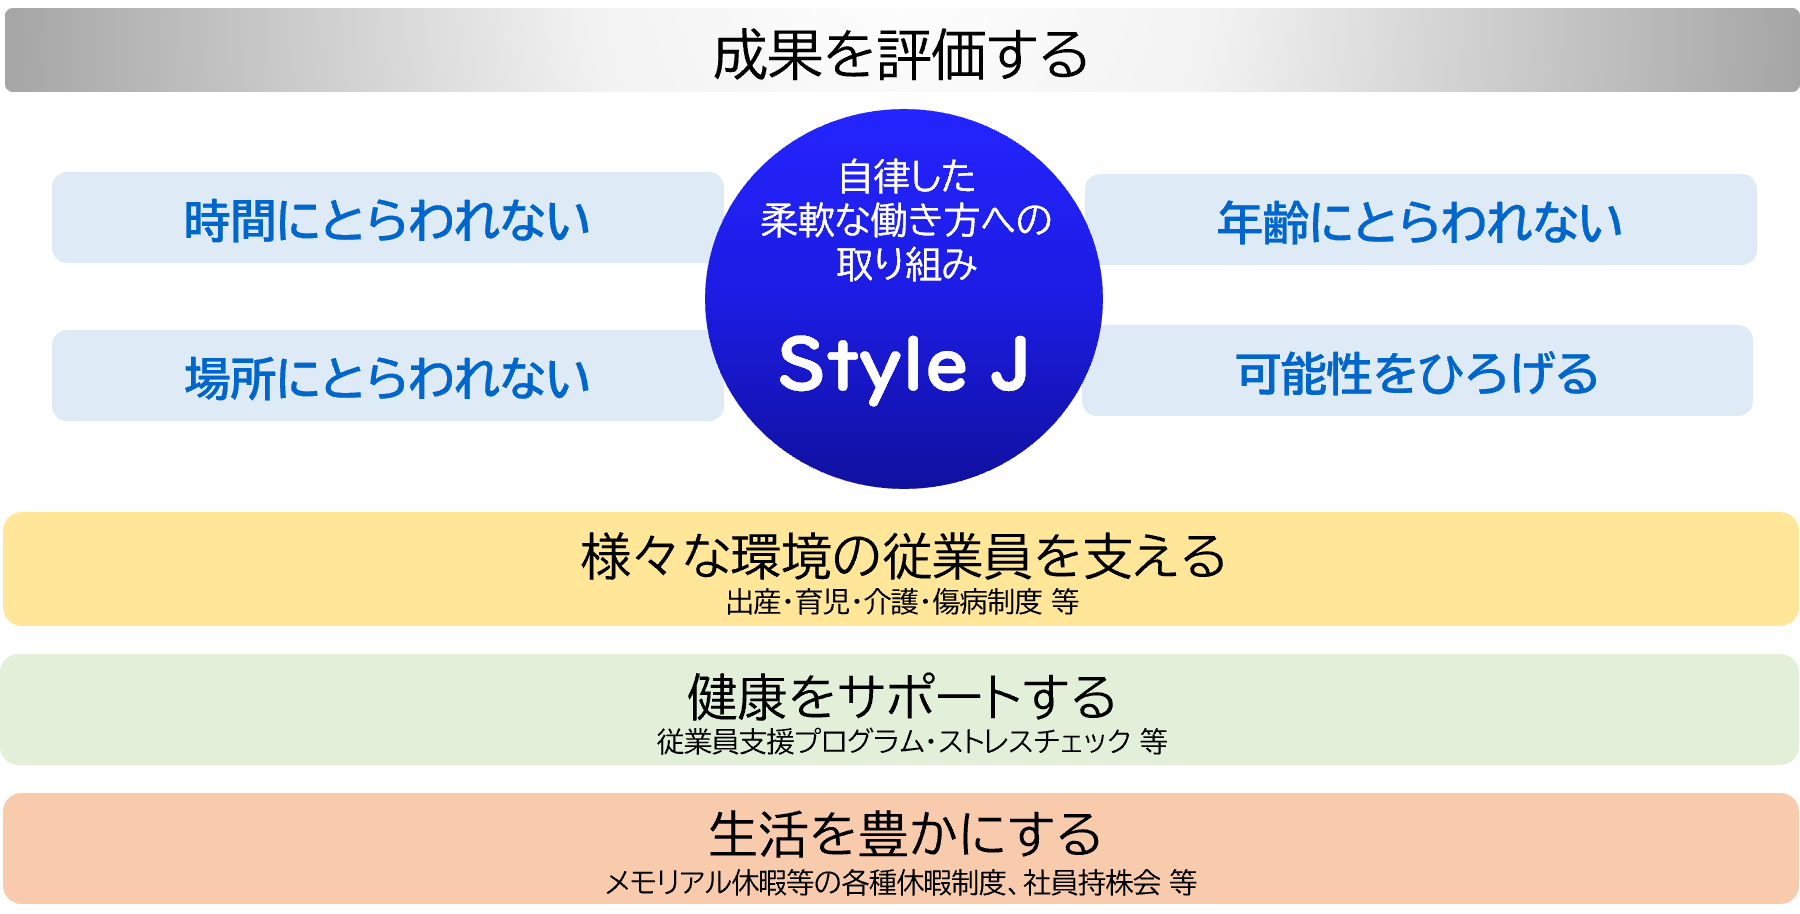 styleJ_2.png